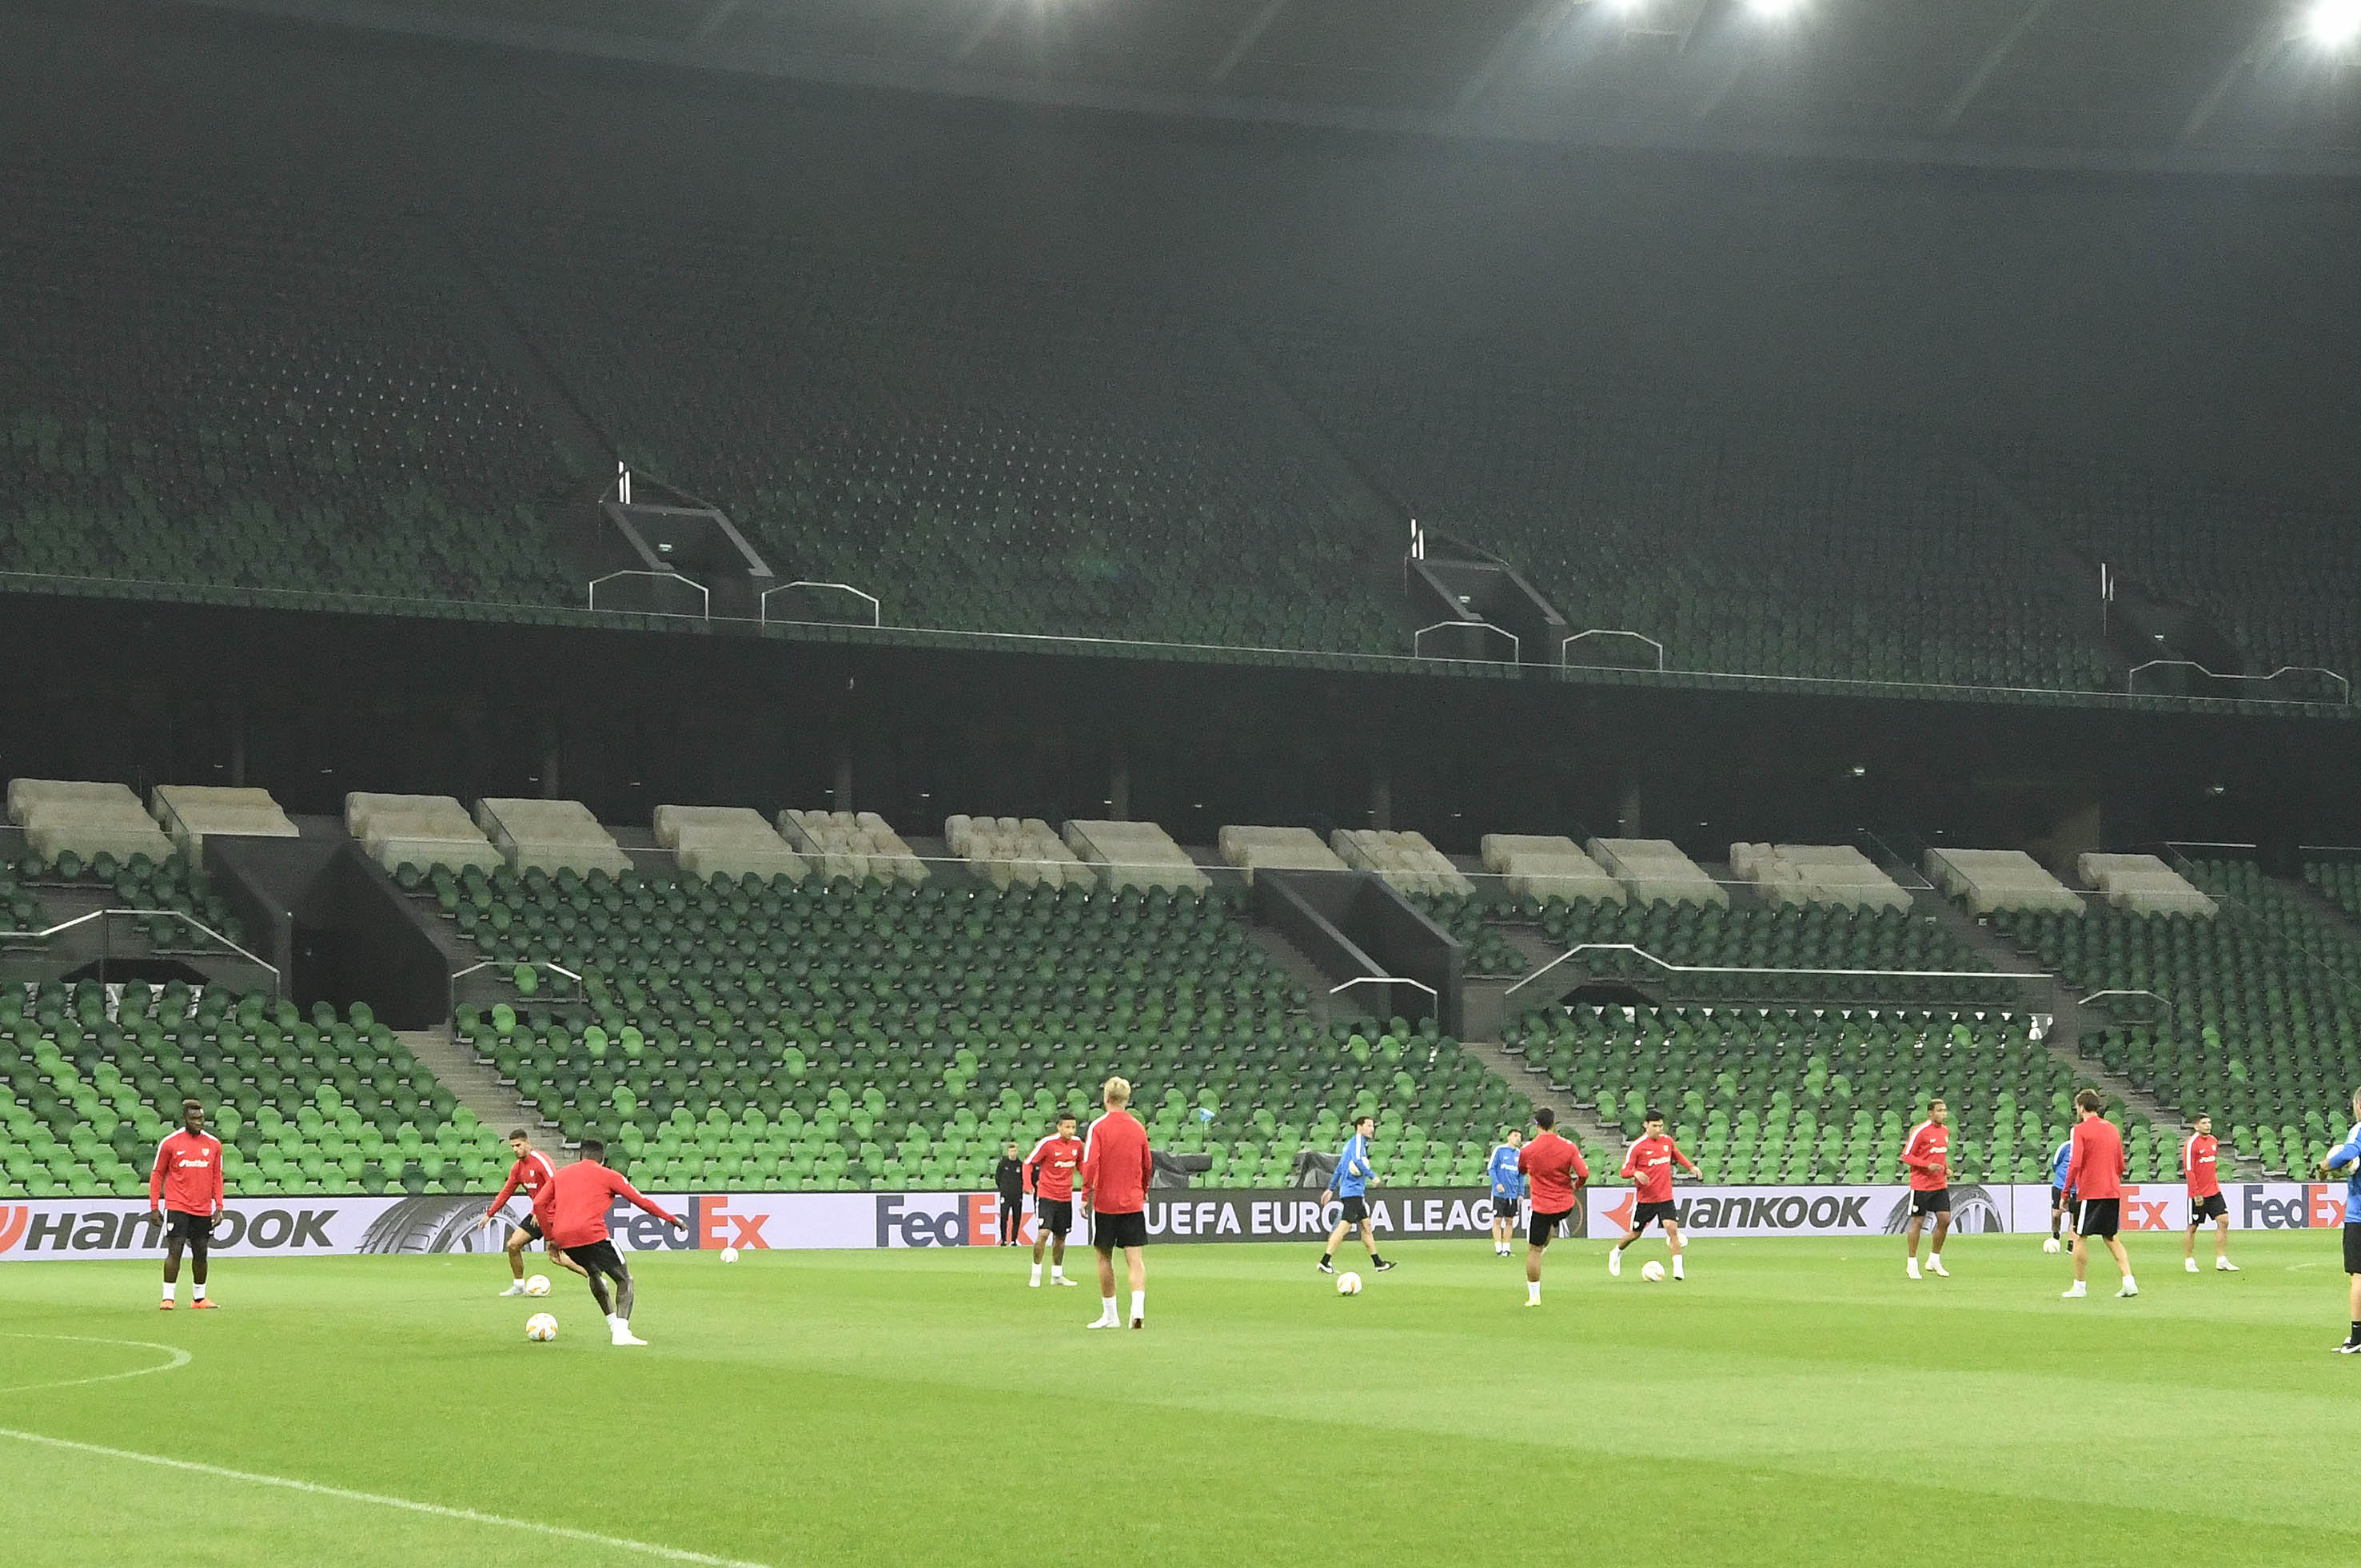 Sevilla training in Krasnodar Stadium